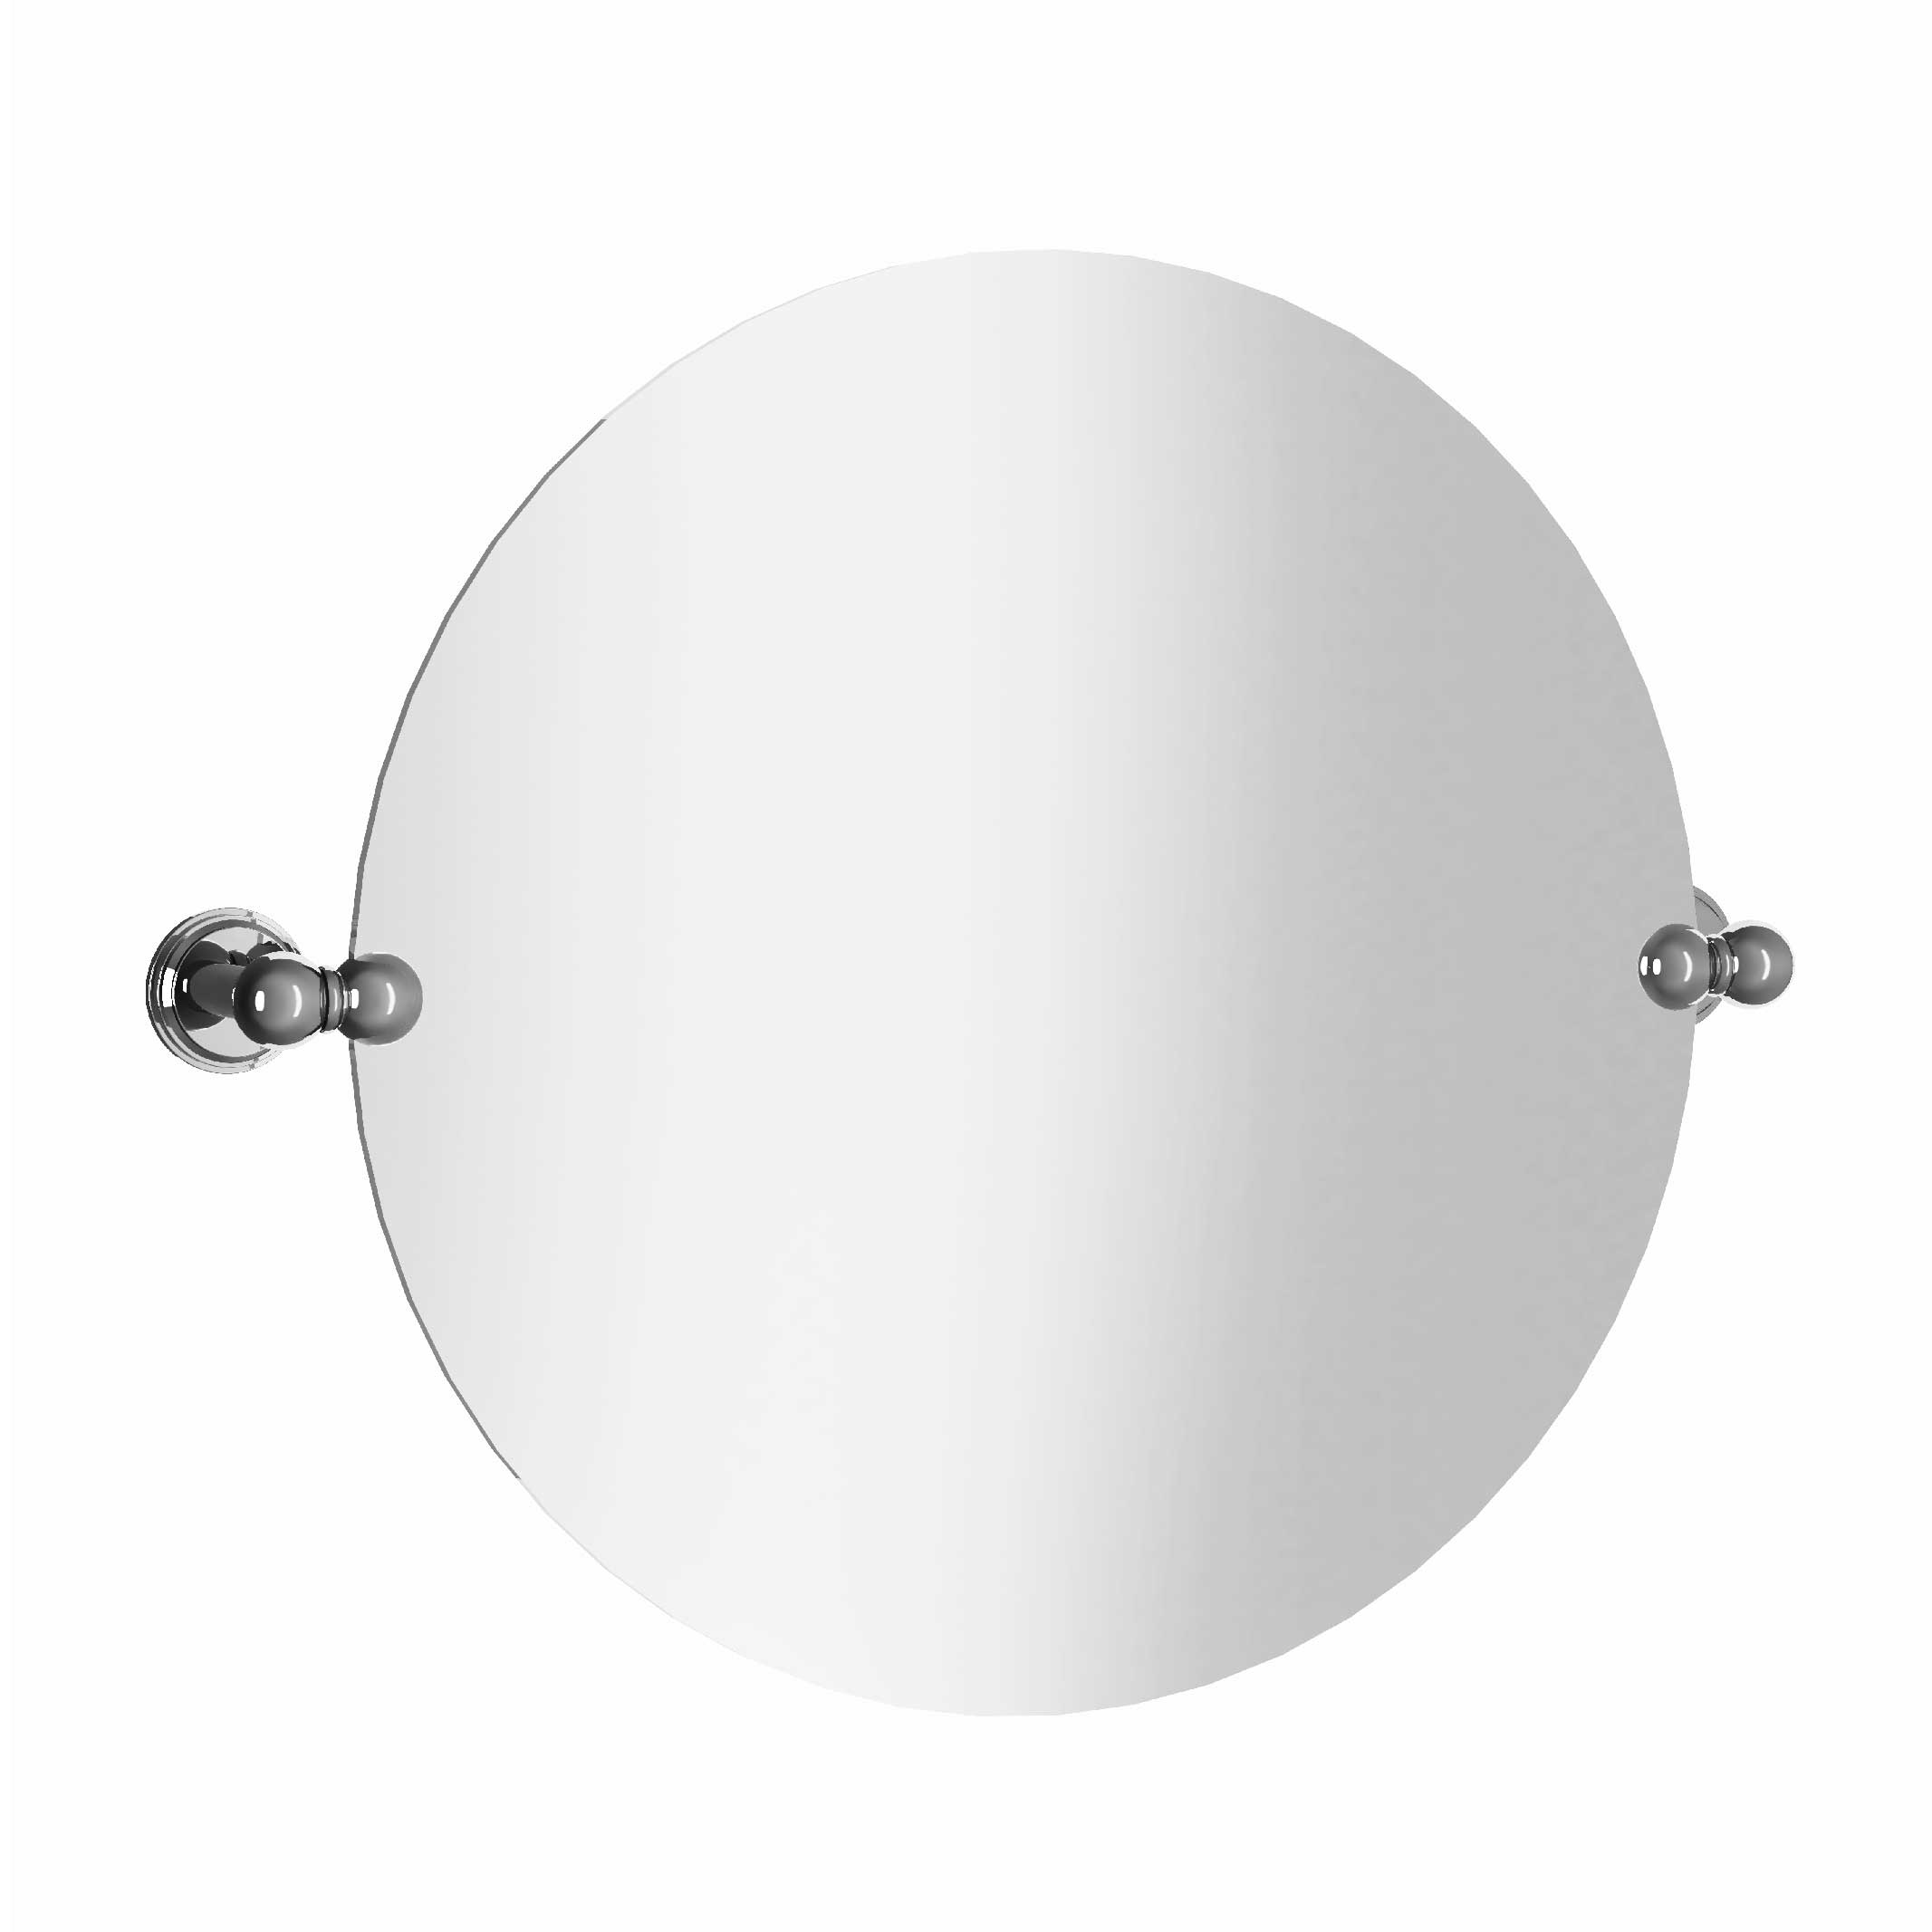 M40-536 Round mirror